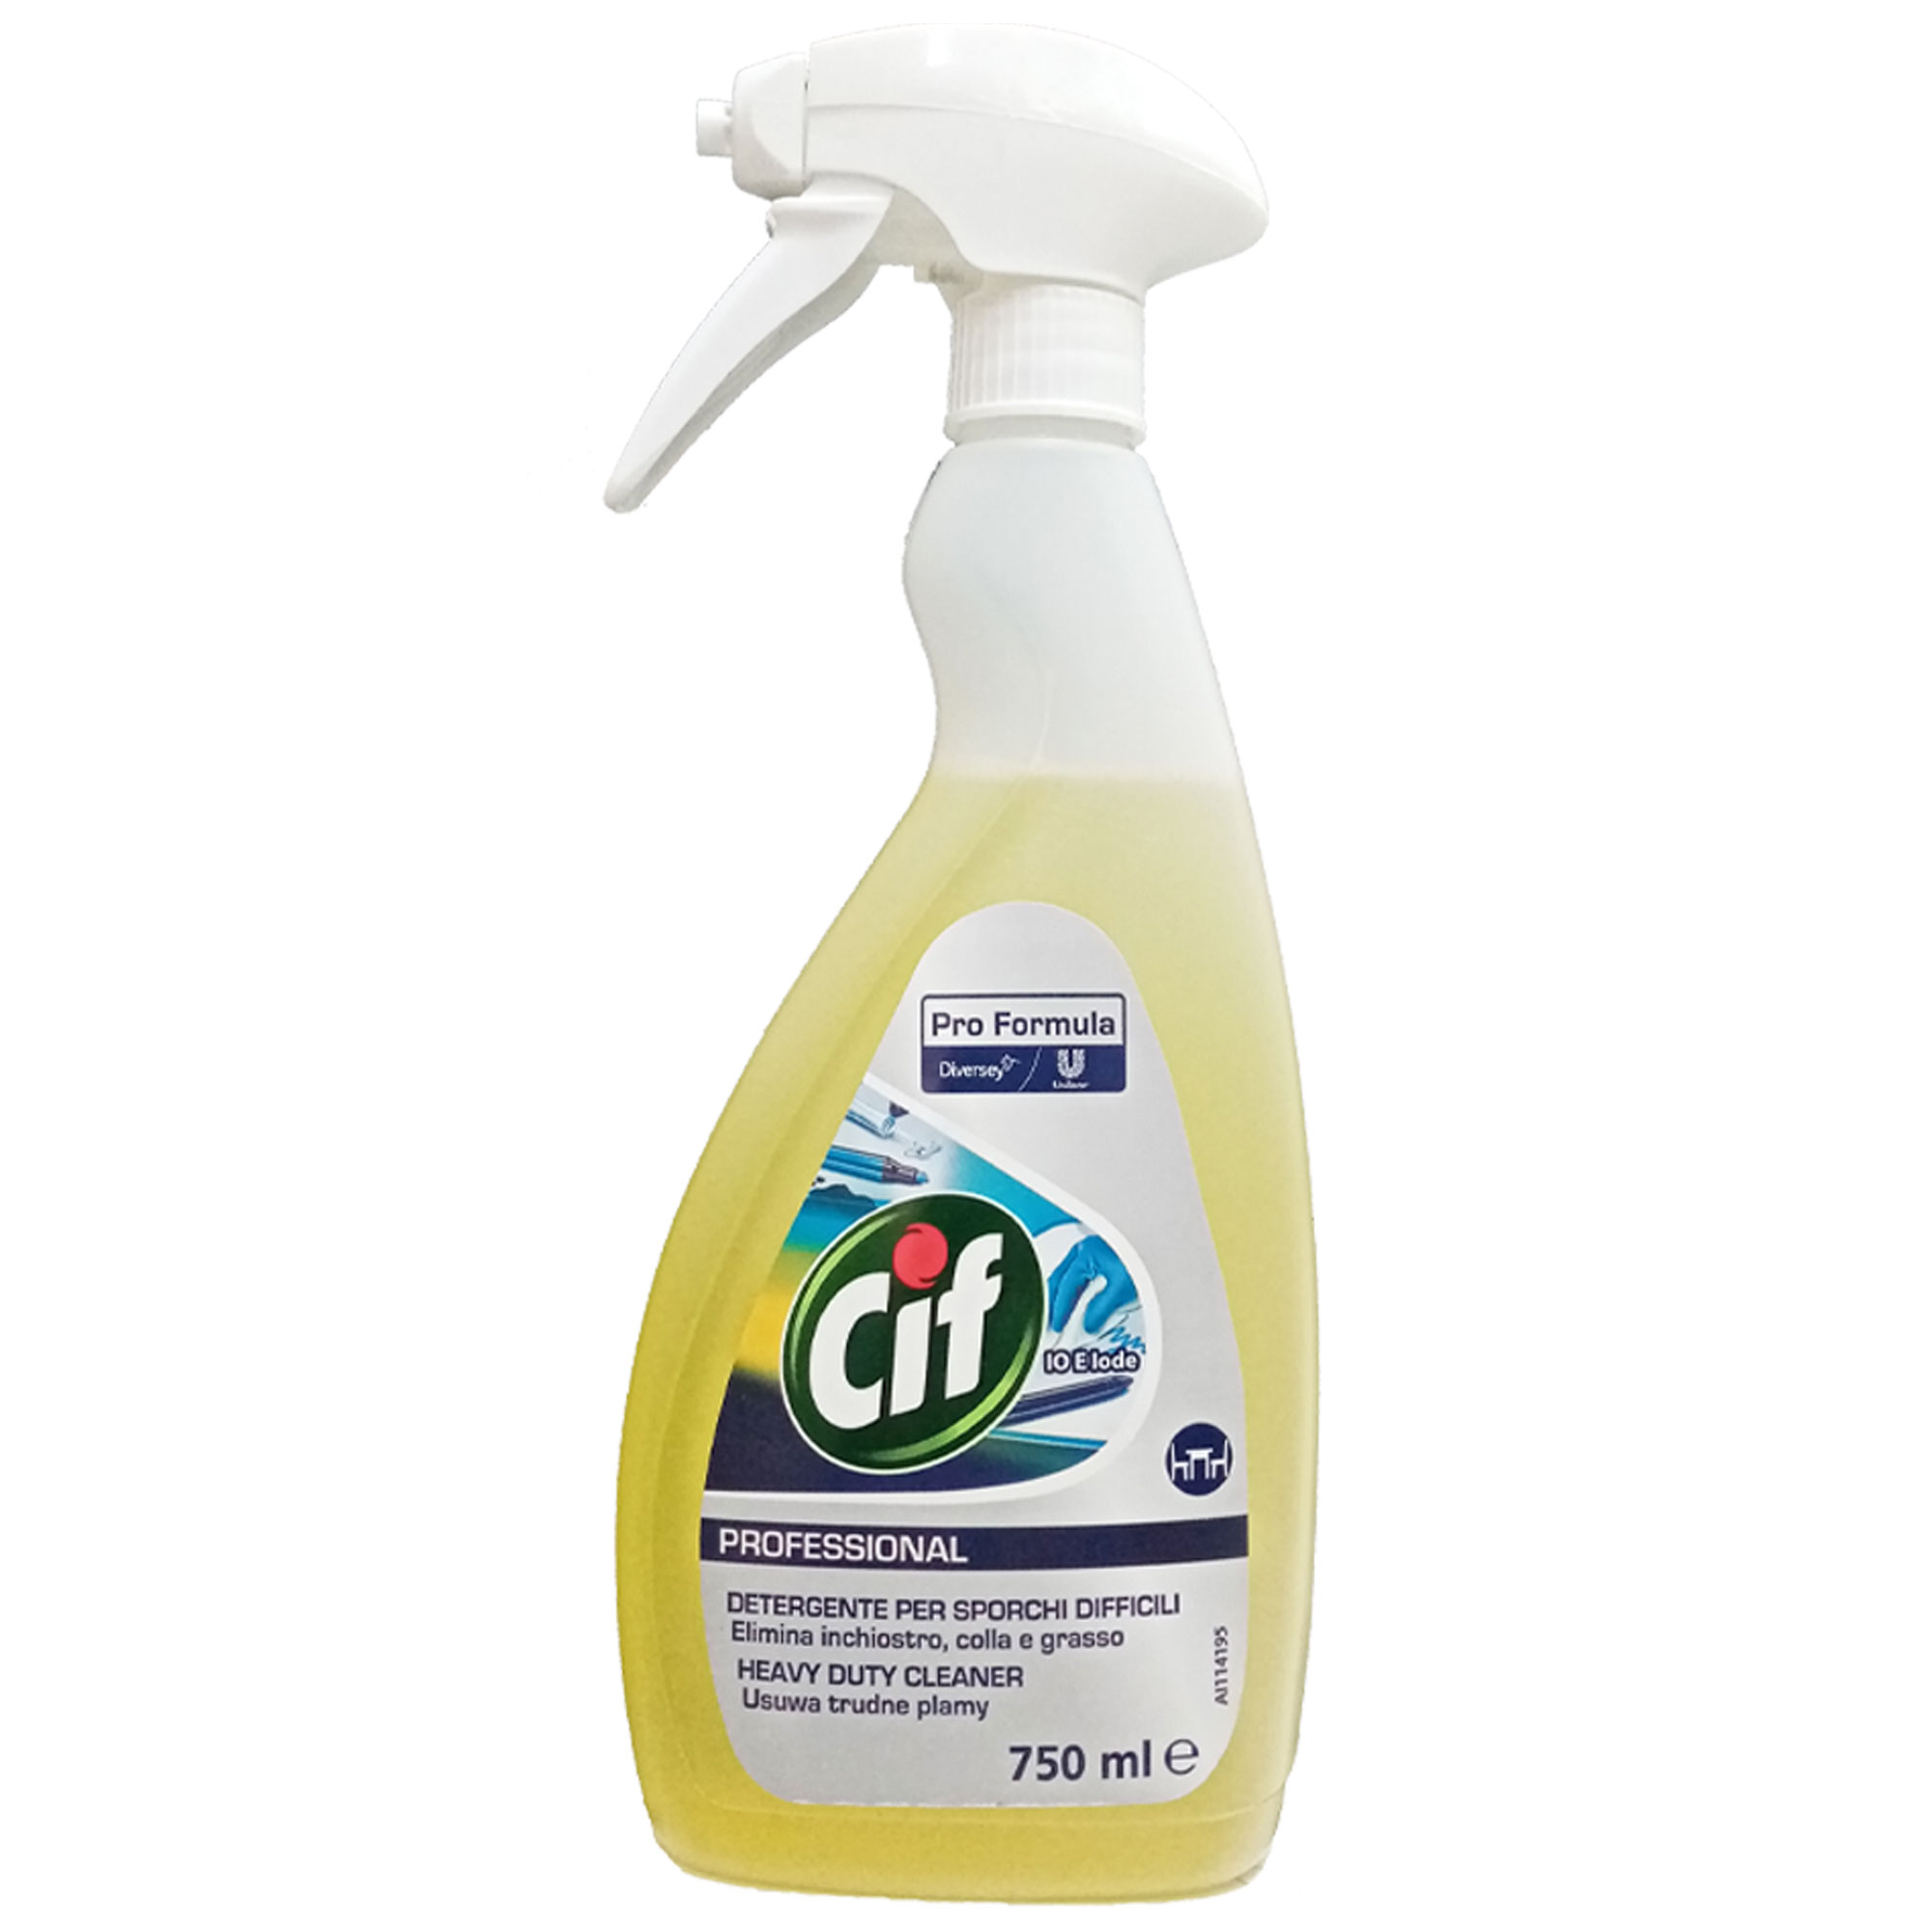 CIF PROFESSIONAL detergente per sporchi difficili inchiostro colla grasso  750ml - Il Mio Store